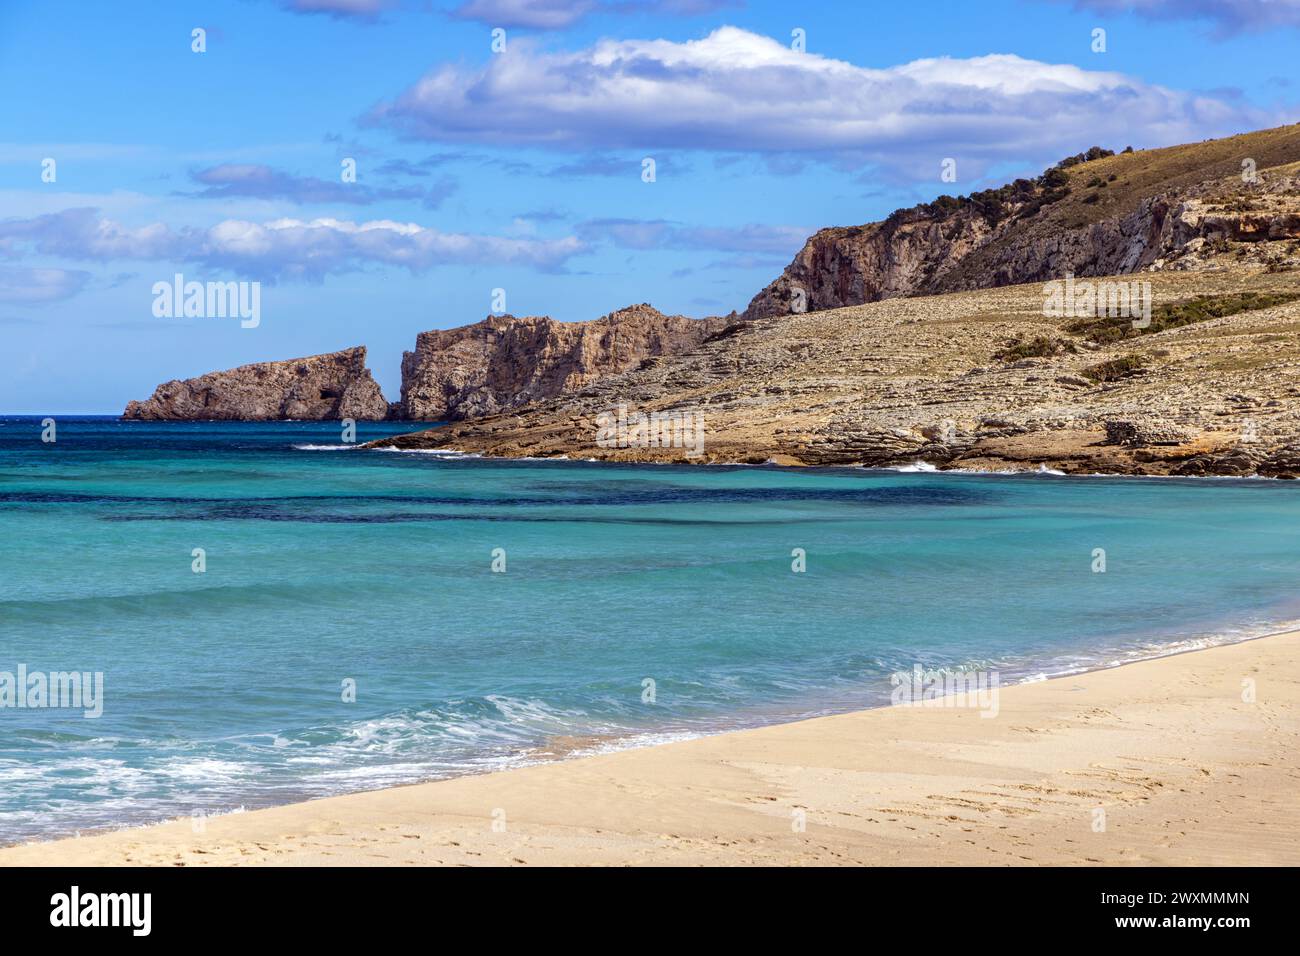 La bellissima spiaggia sabbiosa di Cala Mesquida, Maiorca, Isole Baleari, Spagna Foto Stock